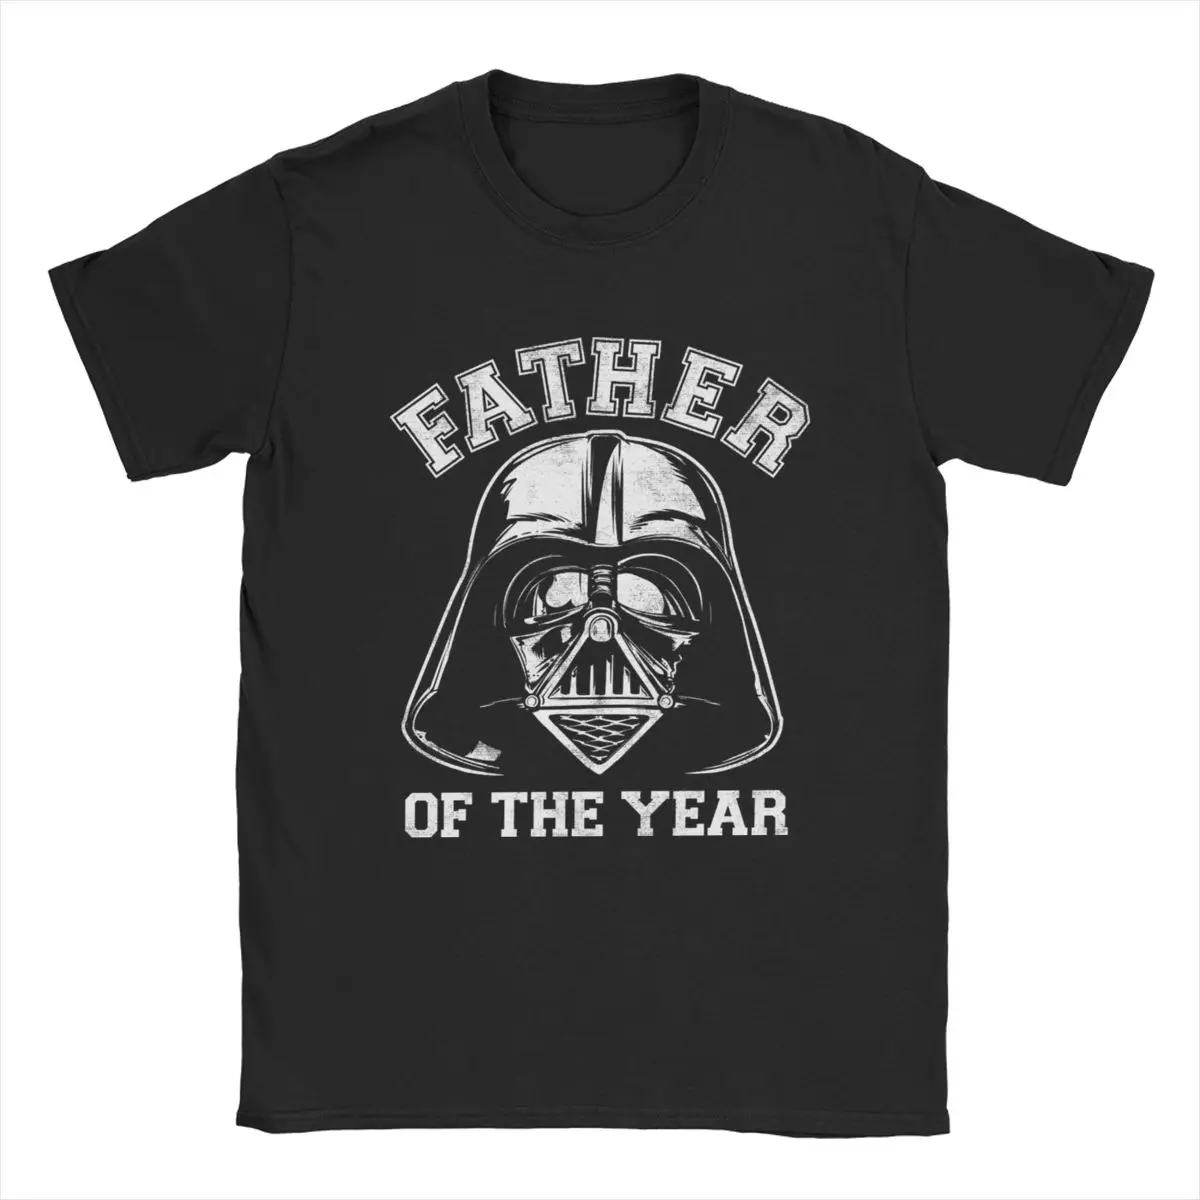 

Мужские футболки с принтом "Звездные войны", "Дарт Вейдер", "отец года", Необычная футболка, футболки с круглым вырезом, хлопковые блузки